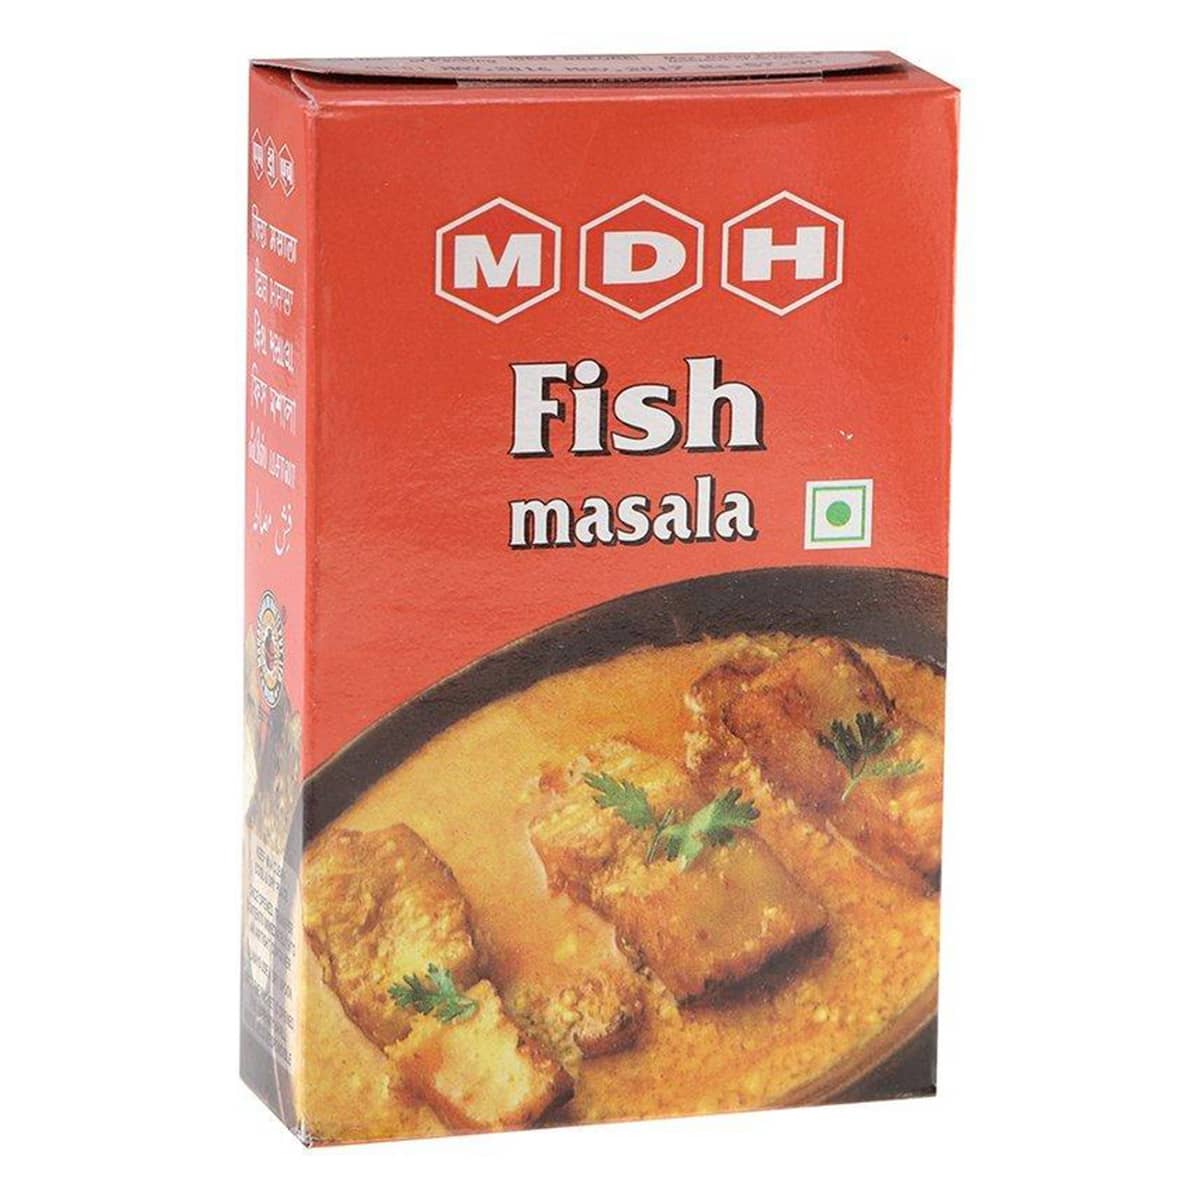 Buy MDH Fish Masala - 100 gm